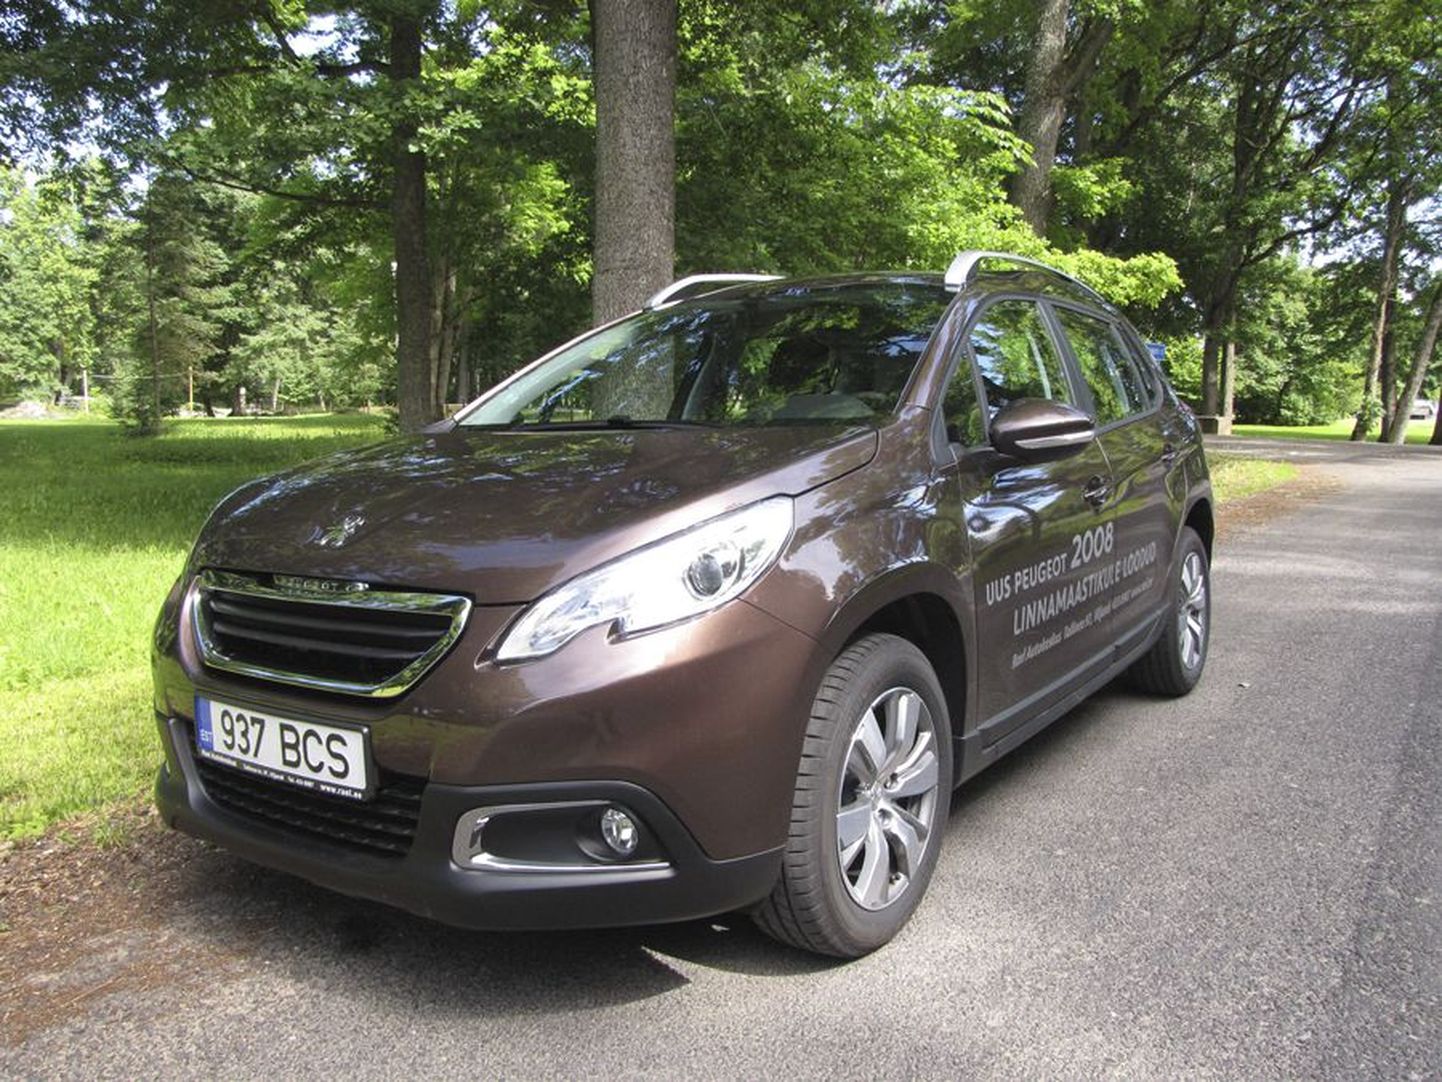 Peugeot 2008 rajaneb väikeautol 208 ning meenutab toda mudelit ka välimuselt.